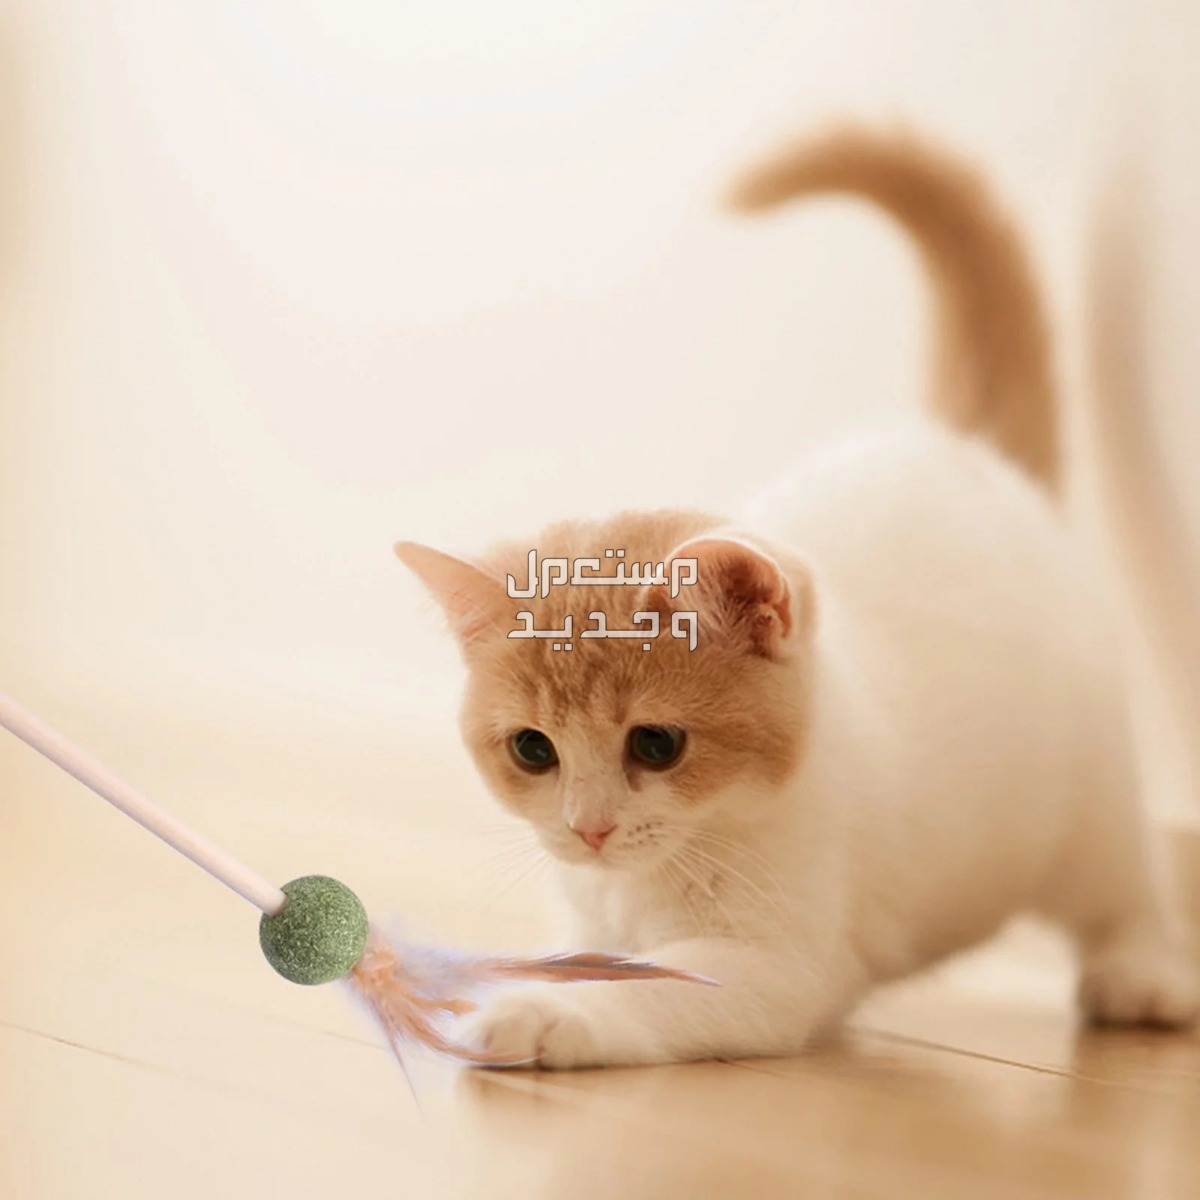 لمحبي القطط - تعرف على أفضل العاب قطط متحركة في الإمارات العربية المتحدة قطة تلعب بالريشة